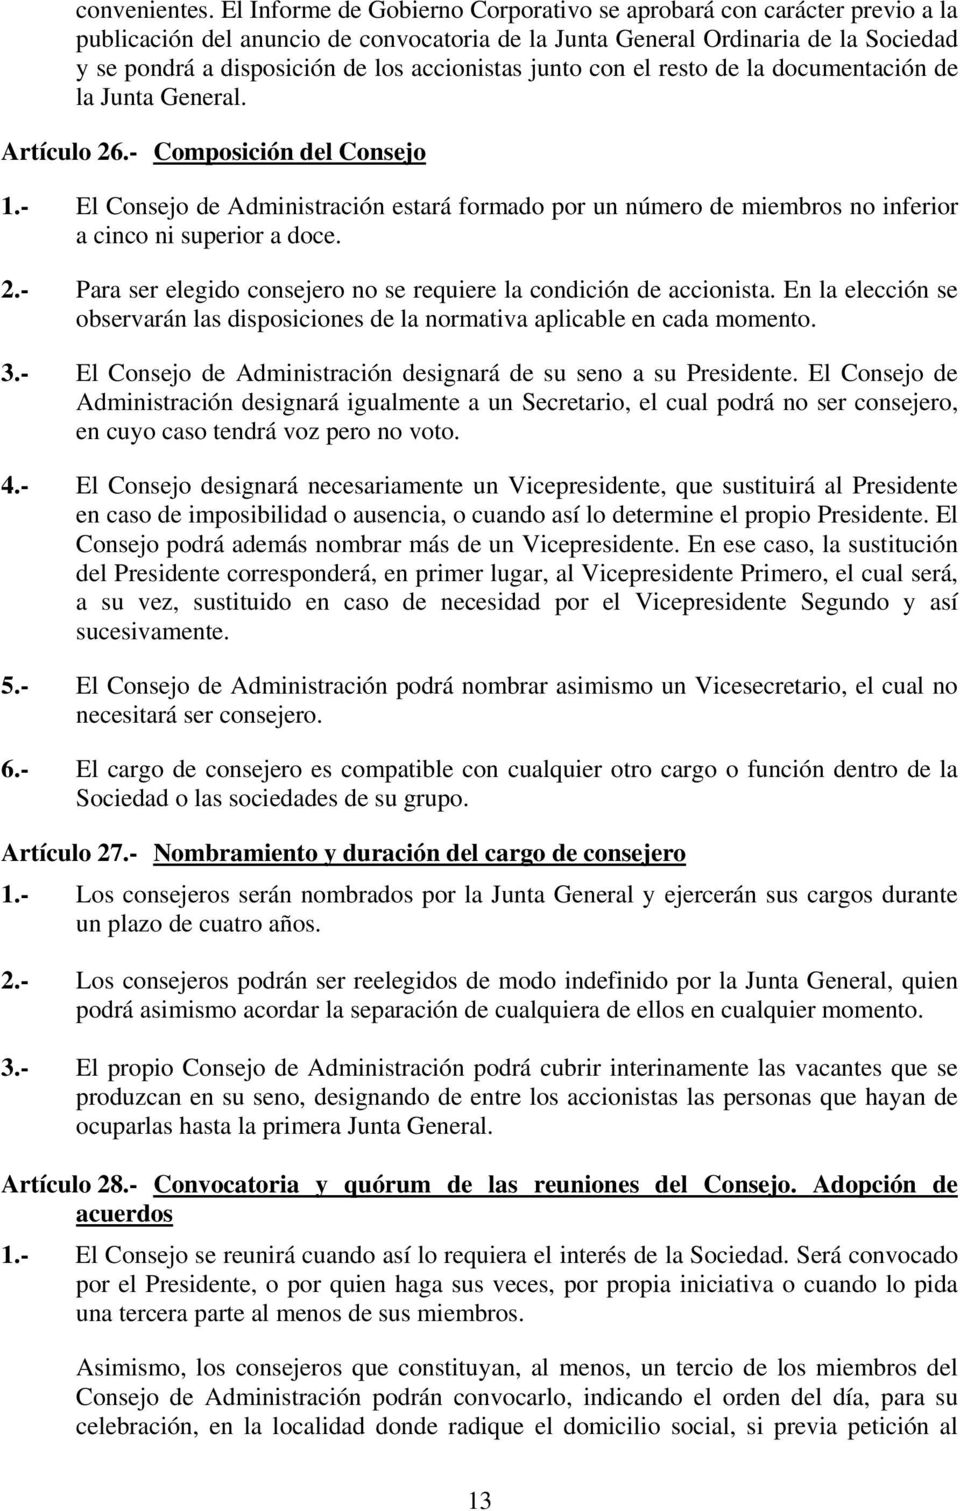 accionistas junto con el resto de la documentación de la Junta General. Artículo 26.- Composición del Consejo 1.